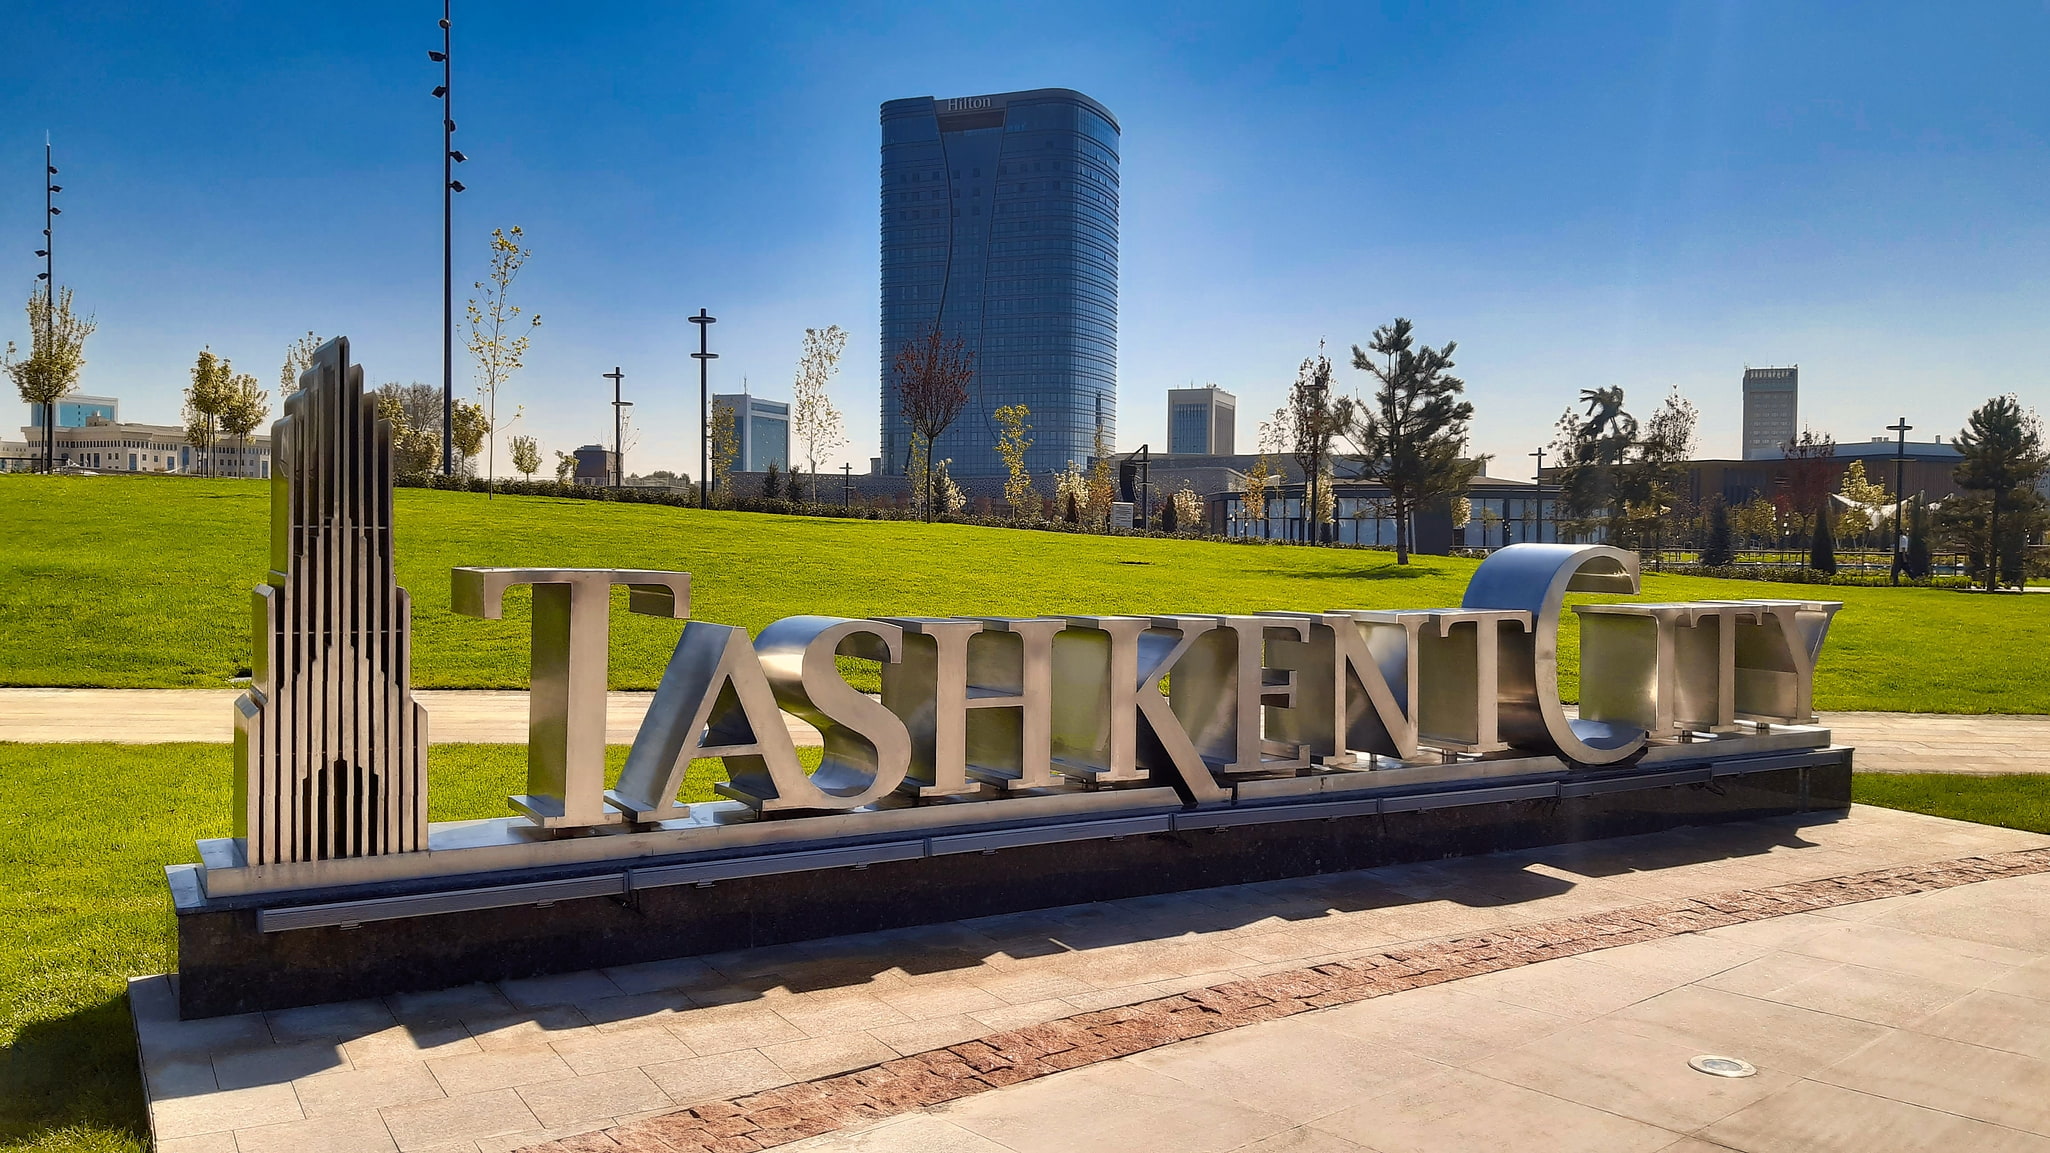 Taszkent, Uzbekistan